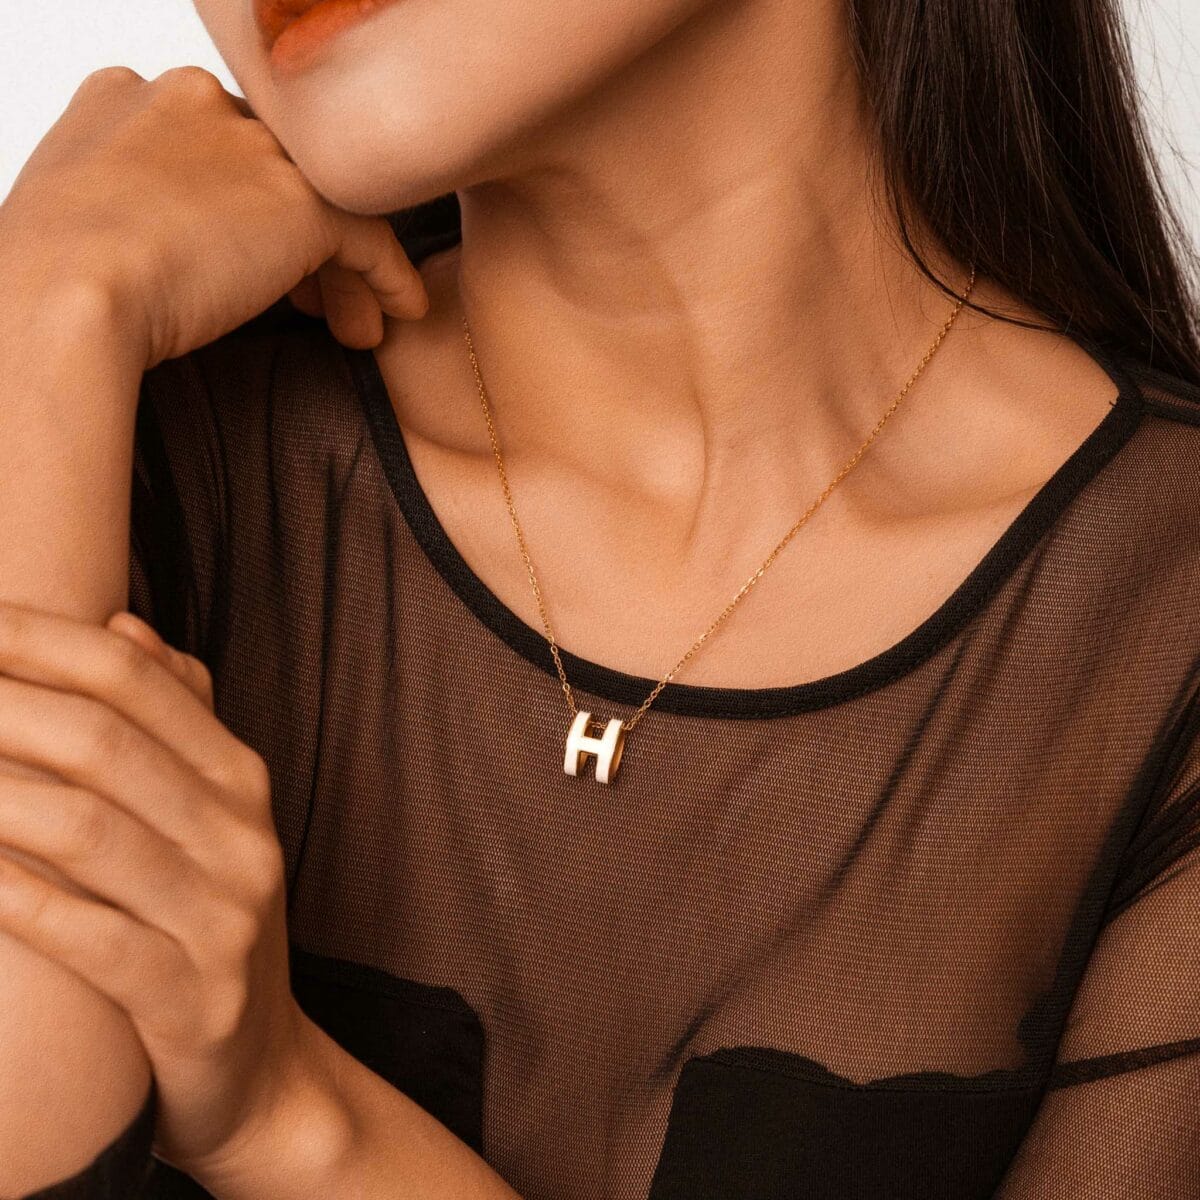 https://m.clubbella.co/product/hana/ Hana necklace (4)